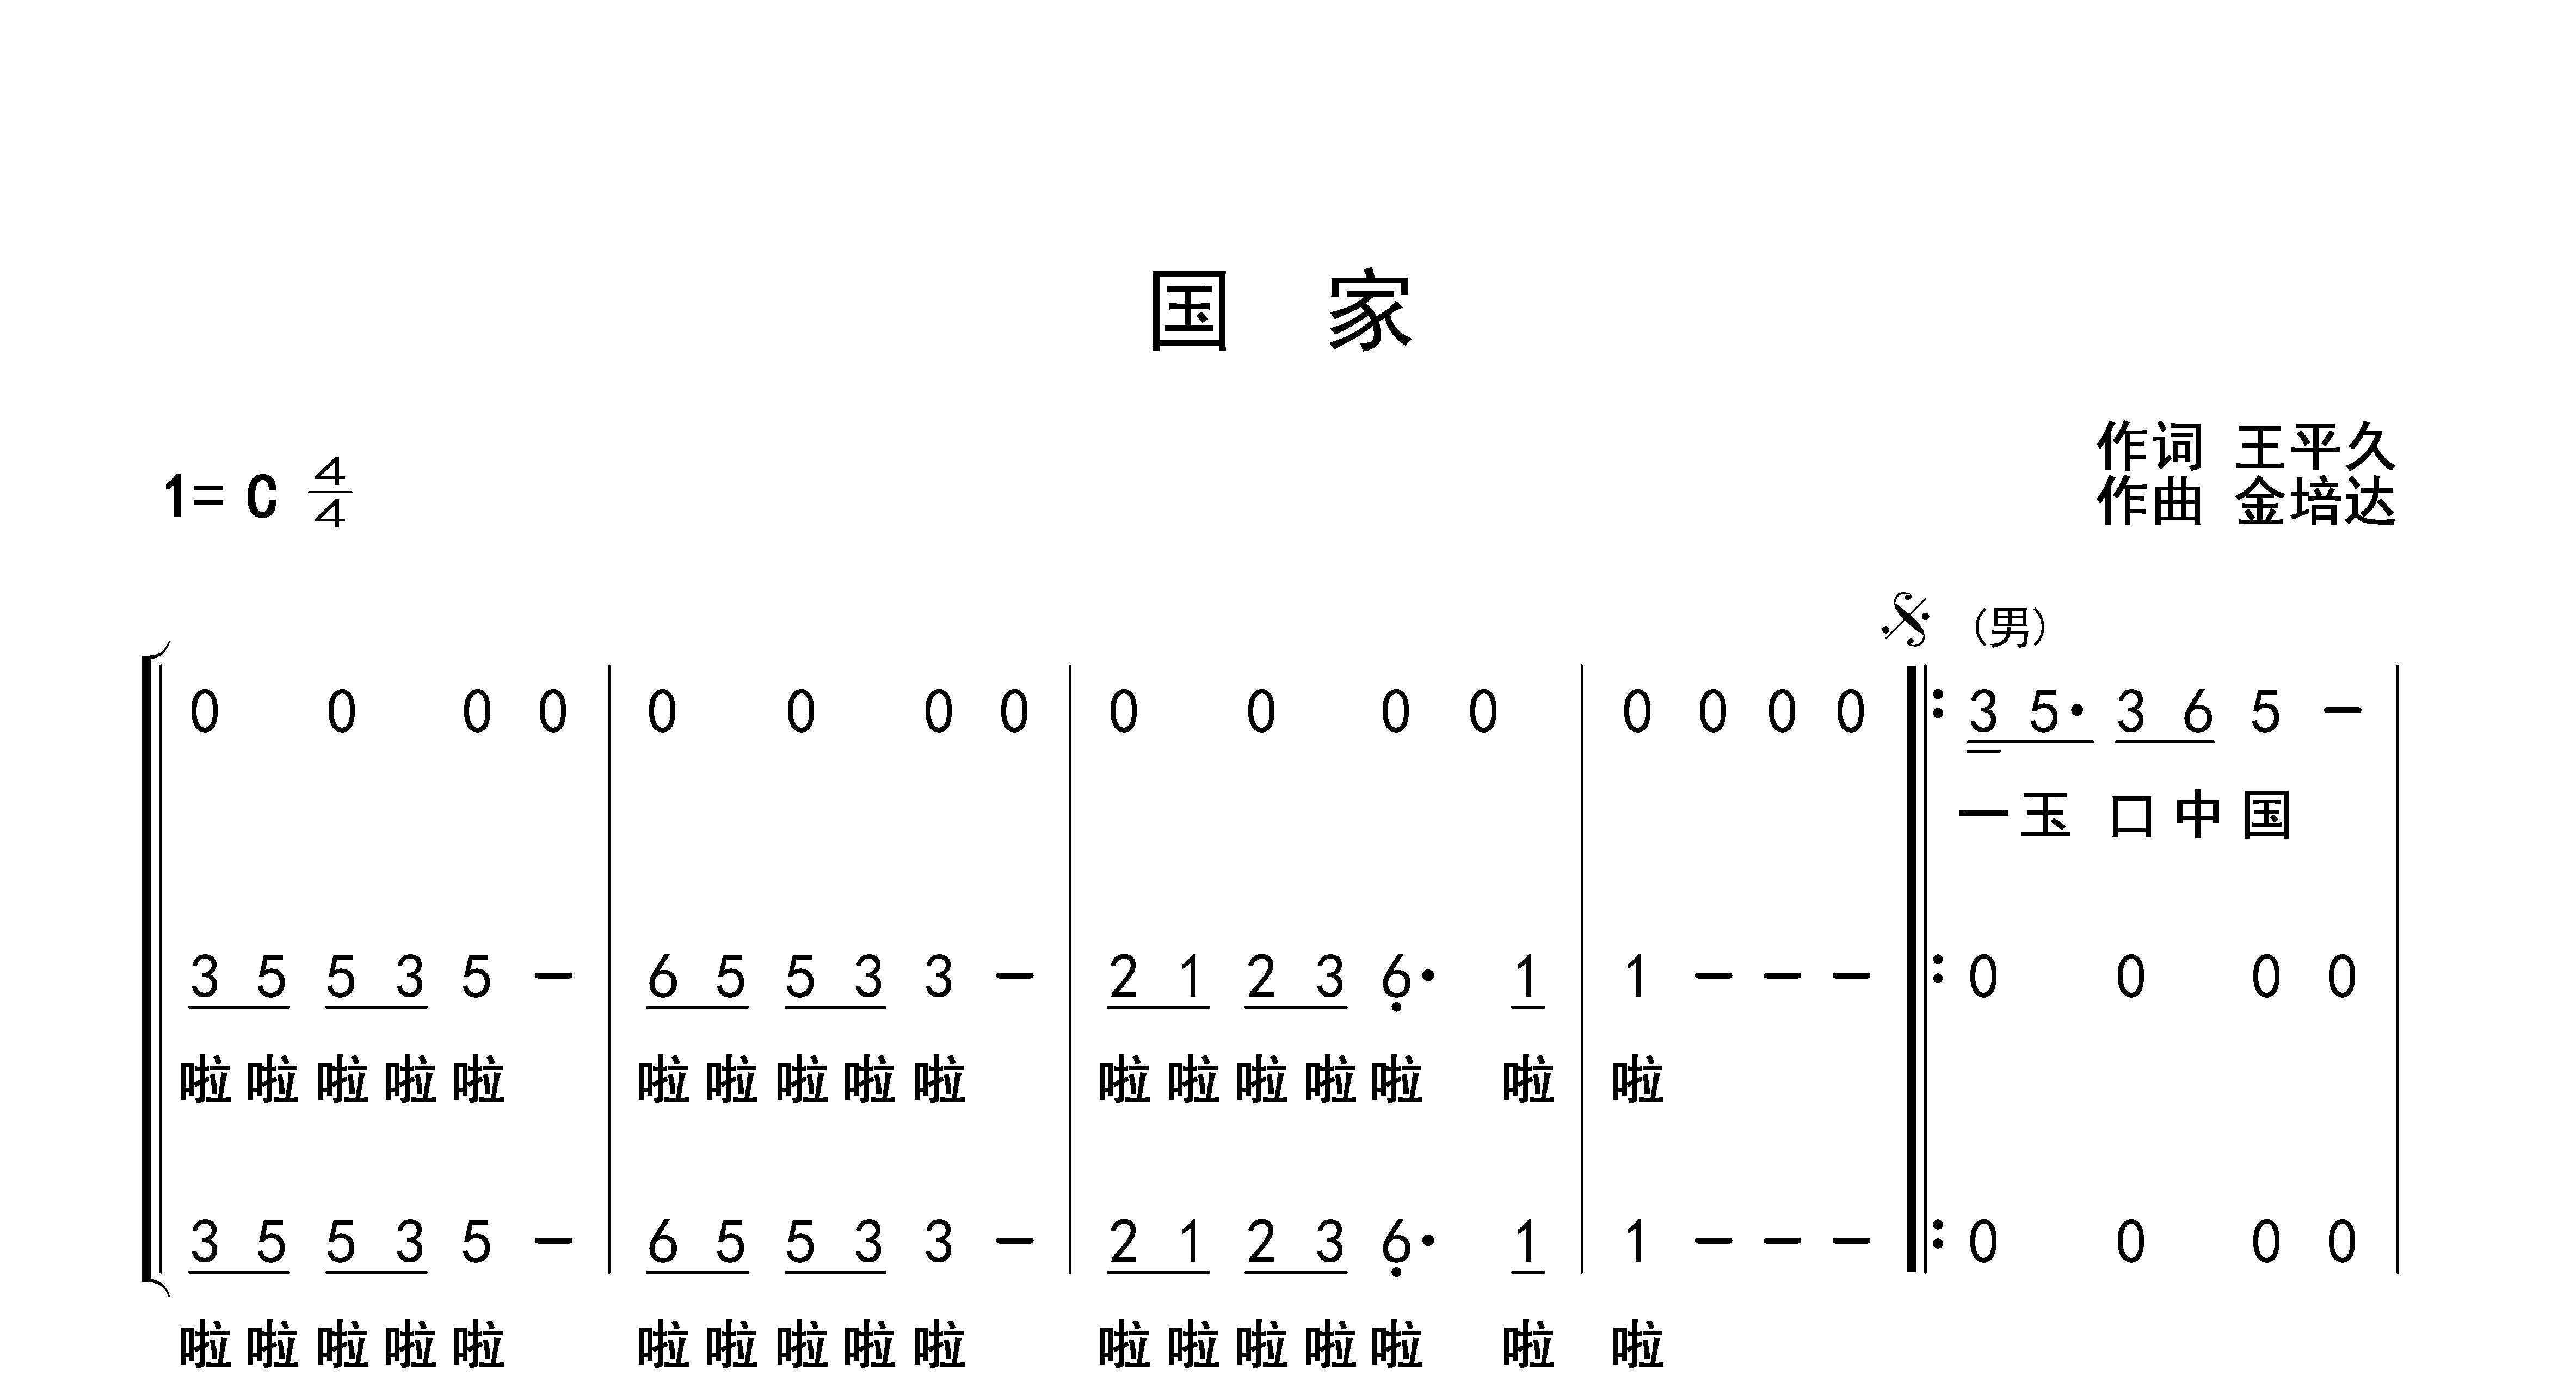 非常优秀 北京市少年宫合唱团二声部合唱谱 歌谱简谱